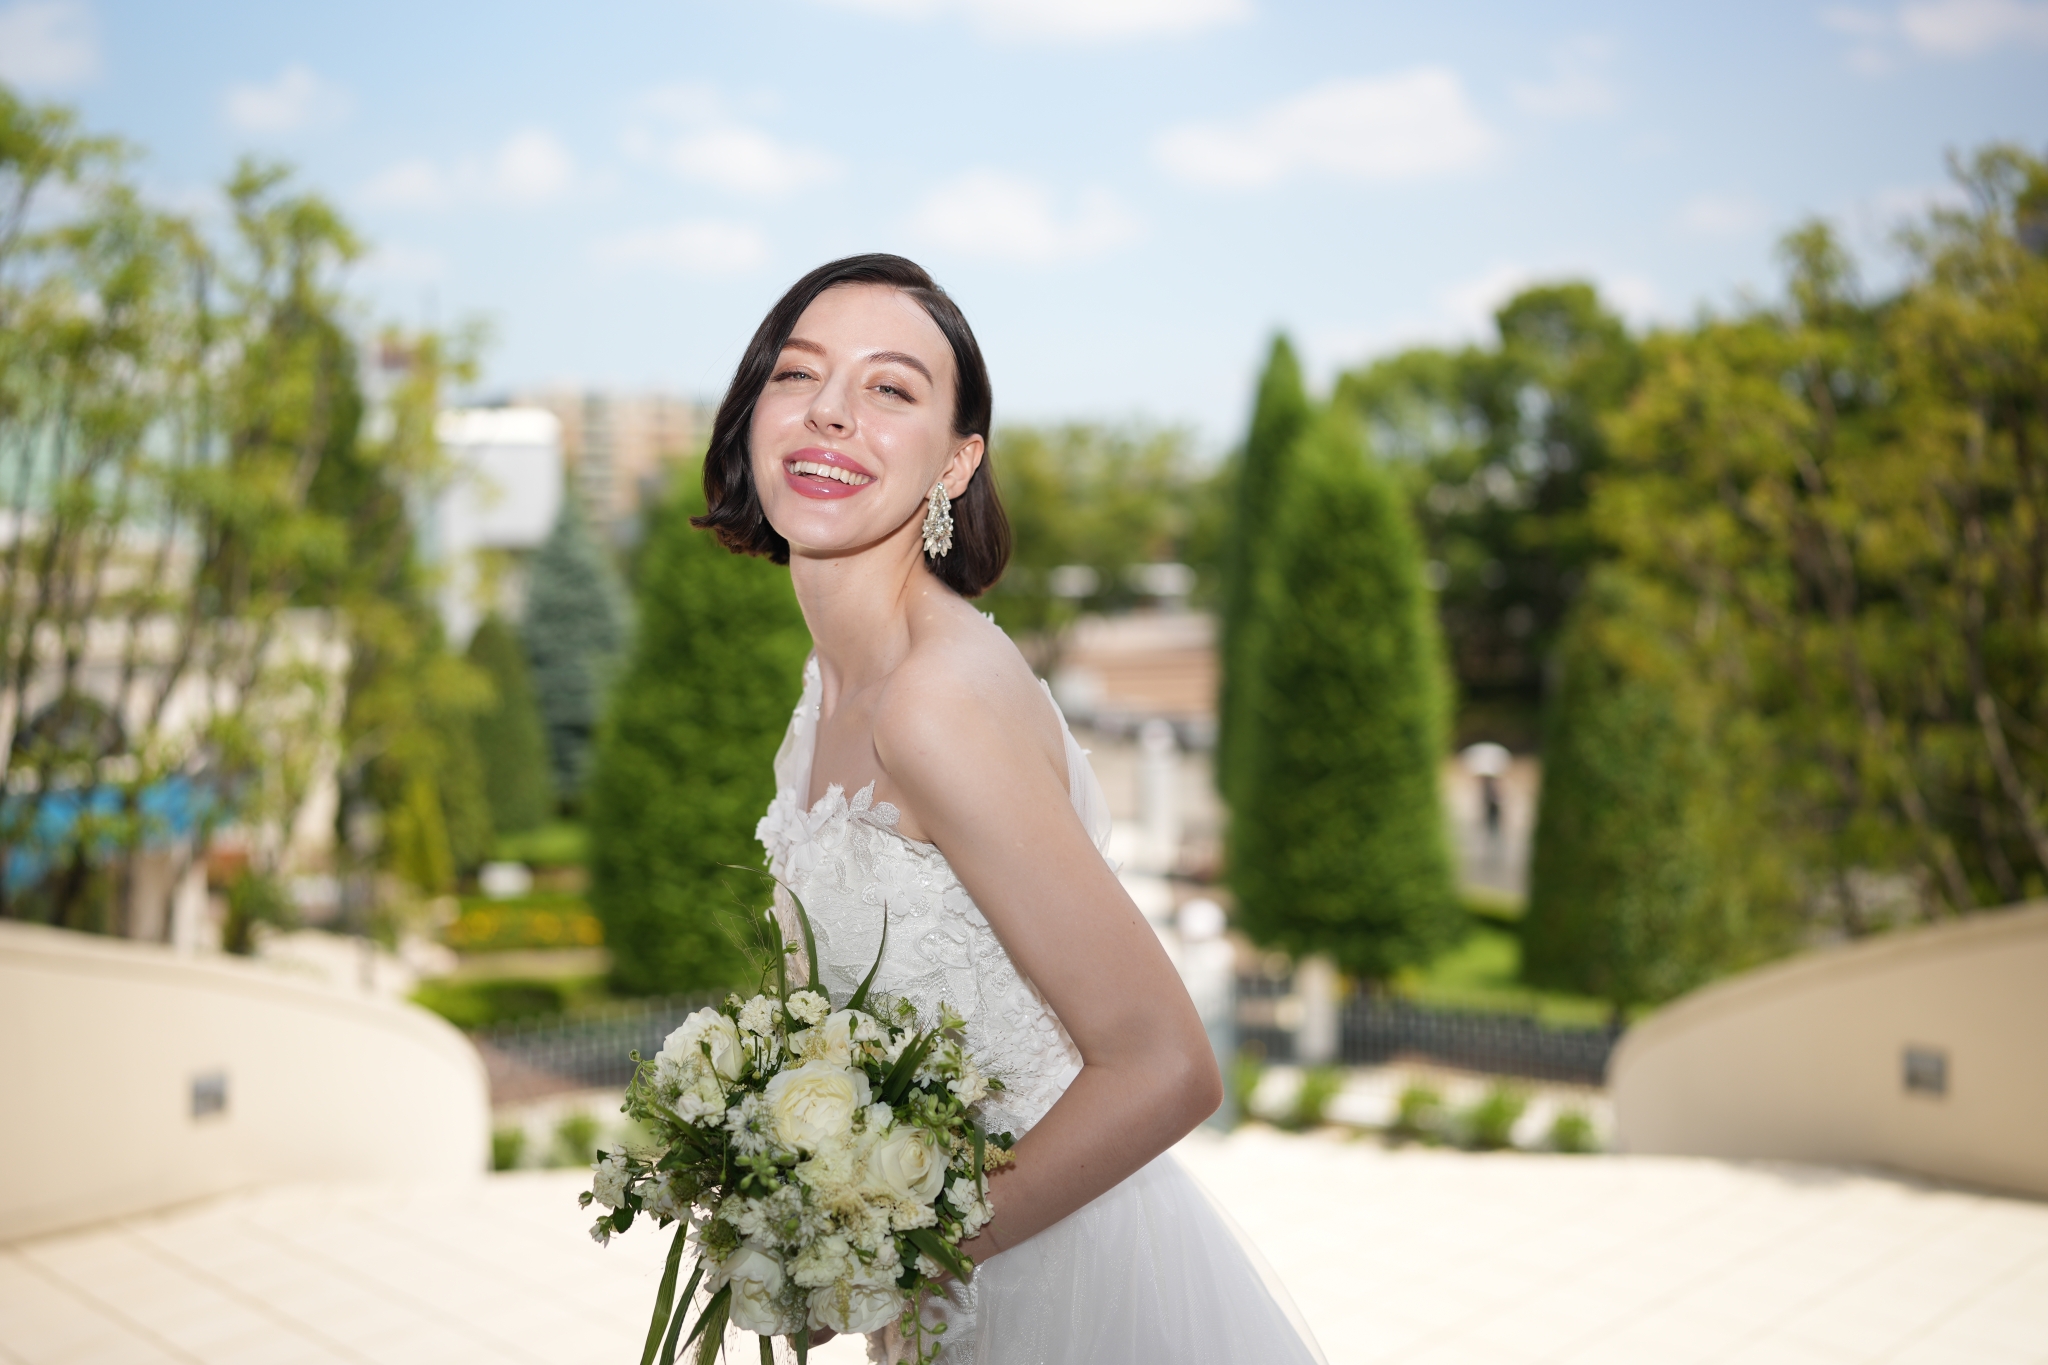 Portrait of a smiling bride holding a bouquet